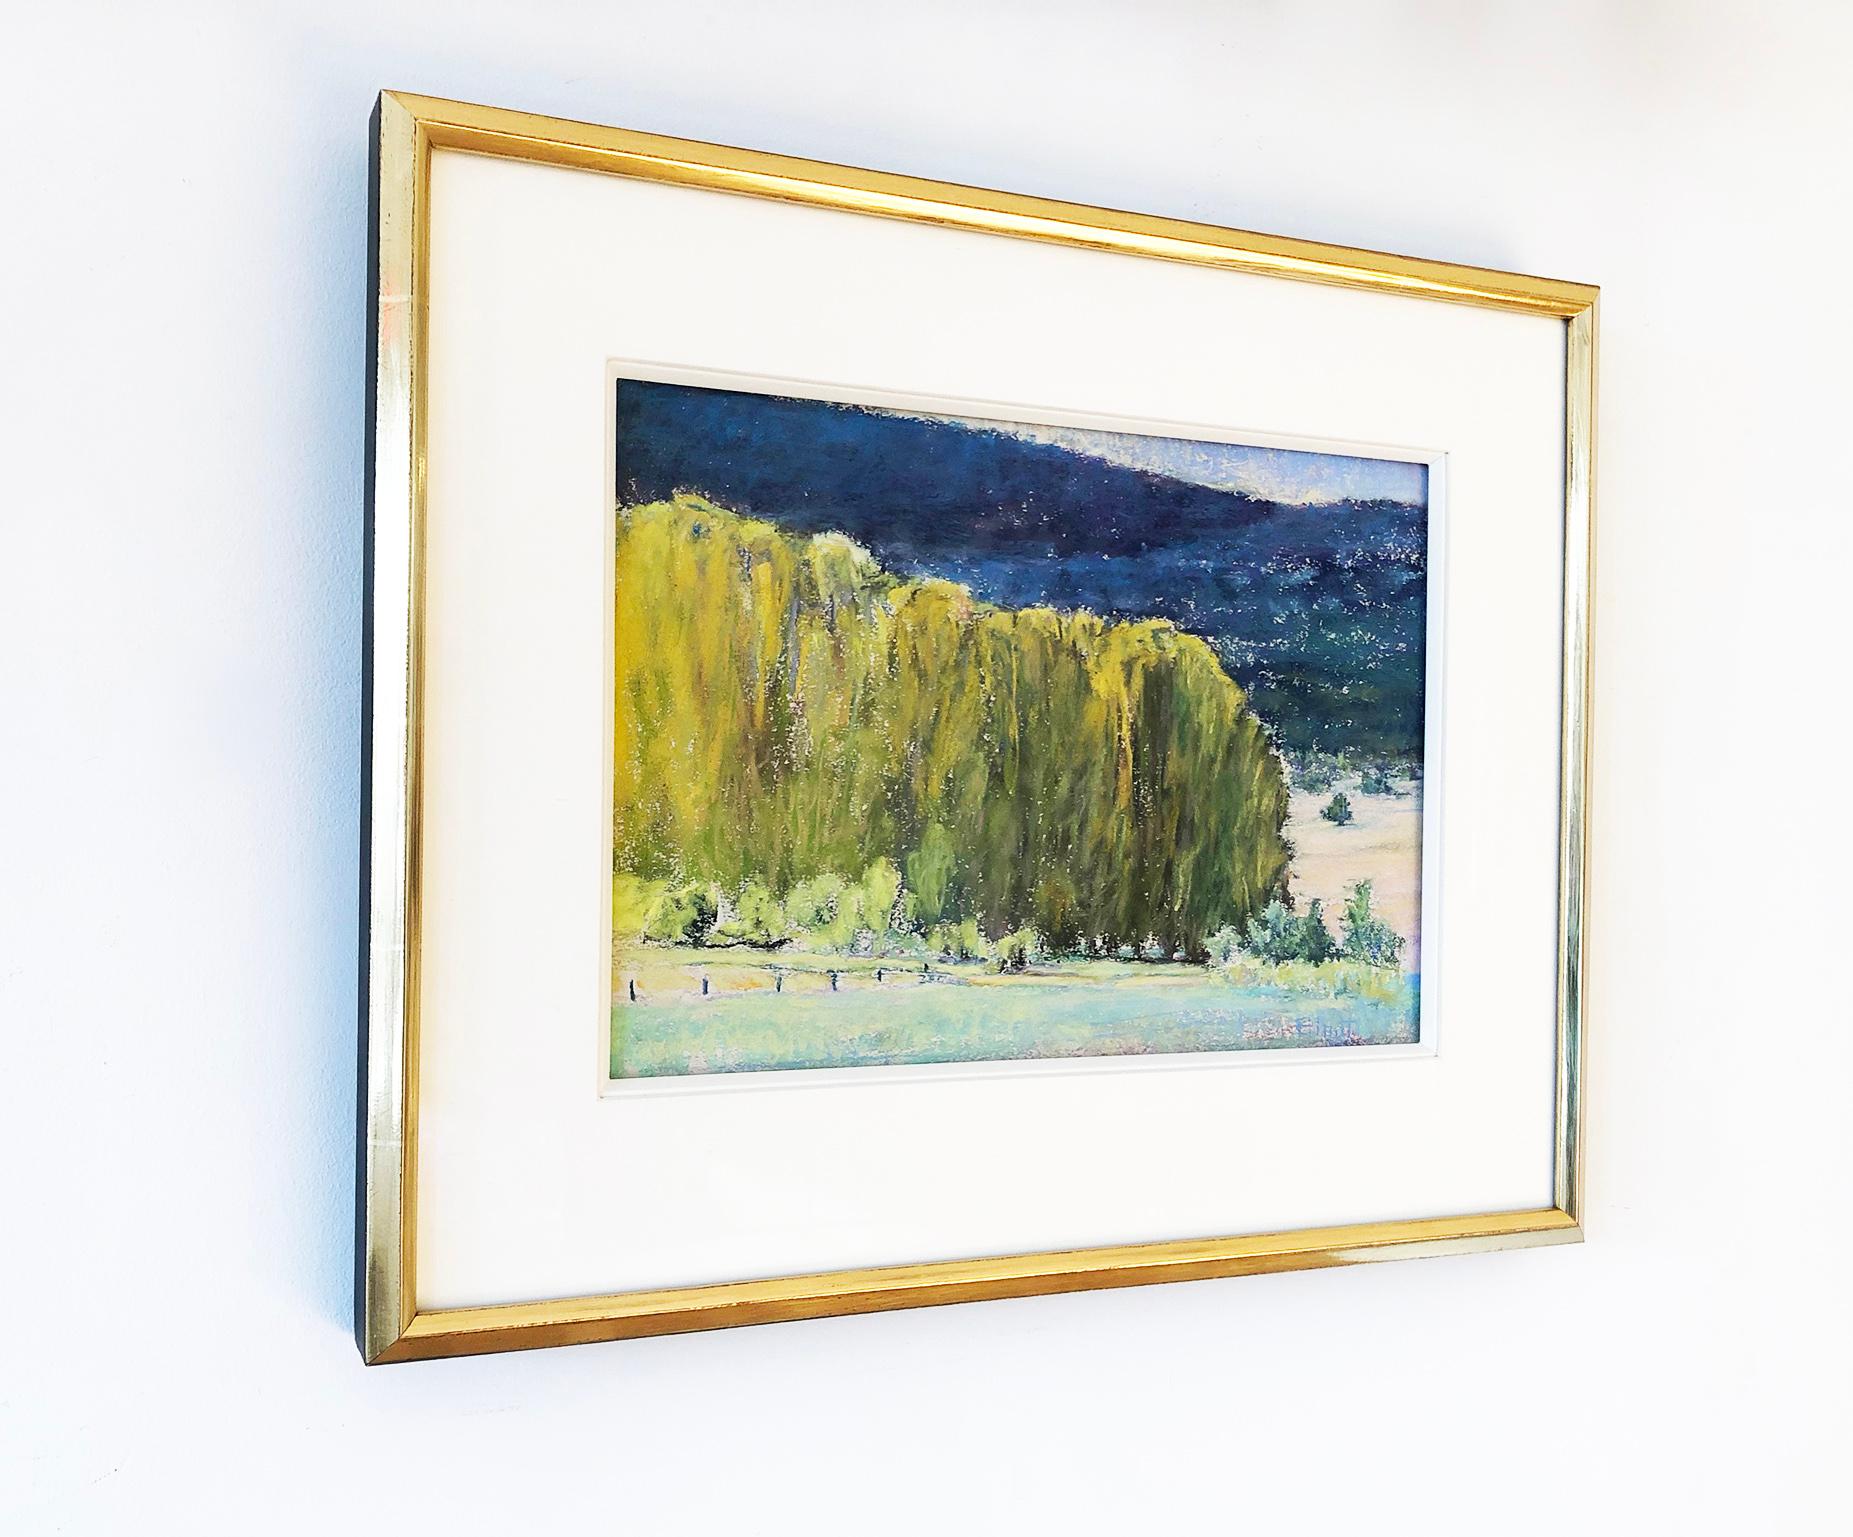 Dieses pastellfarbene Landschaftsgemälde von Ken Elliott zeichnet sich durch eine kühle blaue und grüne Farbpalette aus. Es zeigt grüne Bäume im Vordergrund und blaue Hügel im Hintergrund. Der Grund zwischen Vorder- und Hintergrund ist in einem